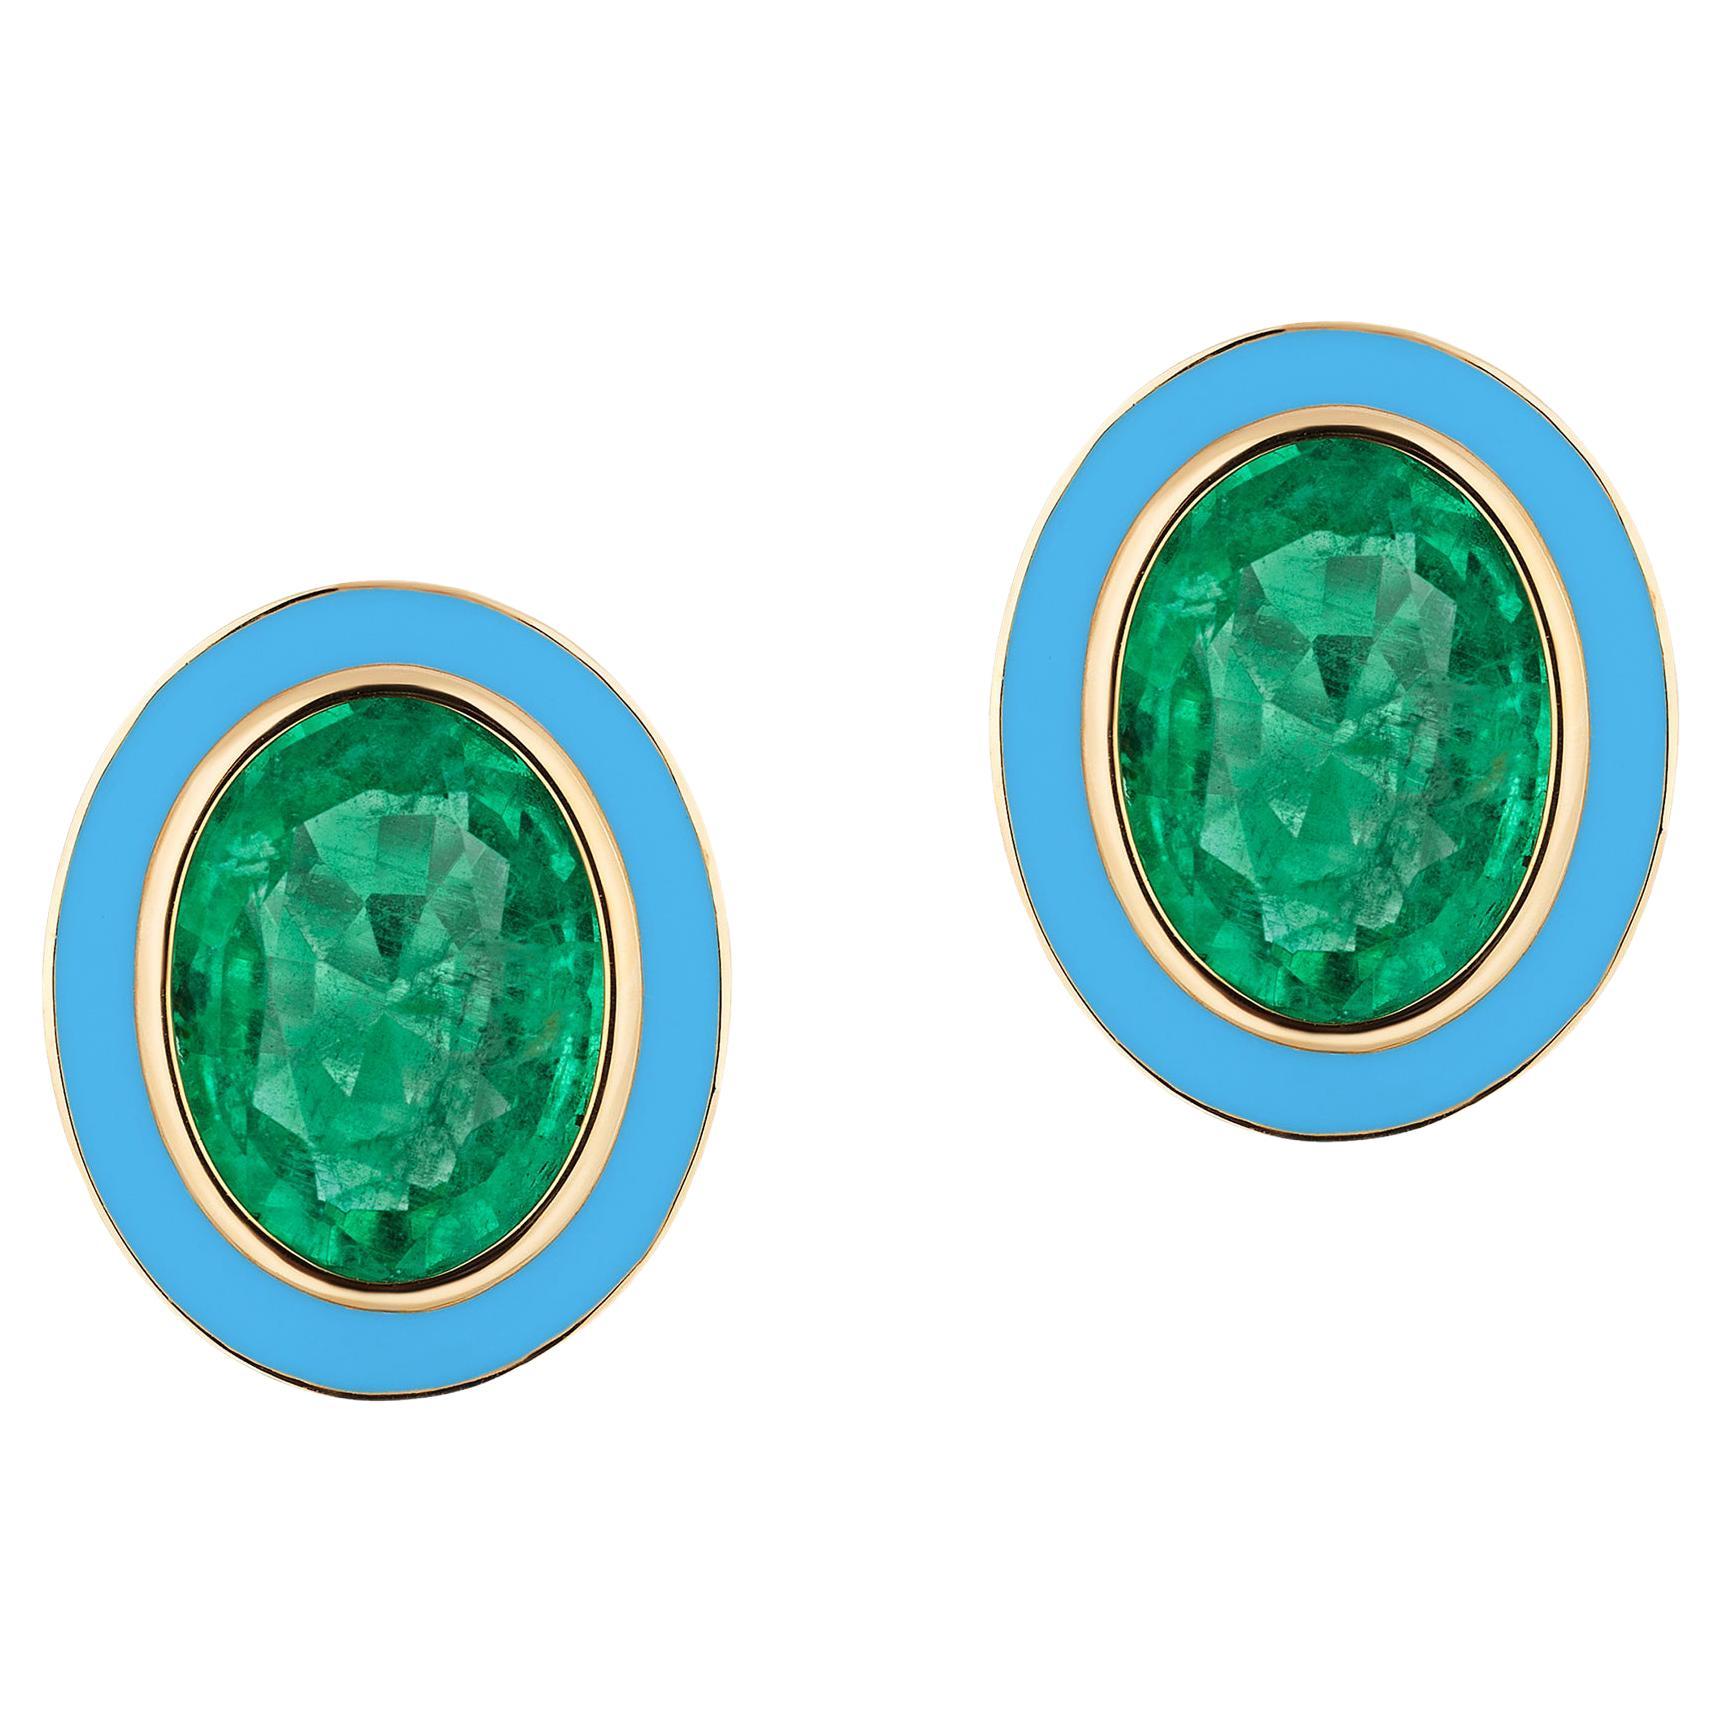 Goshwara Emerald Oval with Turquoise Enamel Stud Earrings